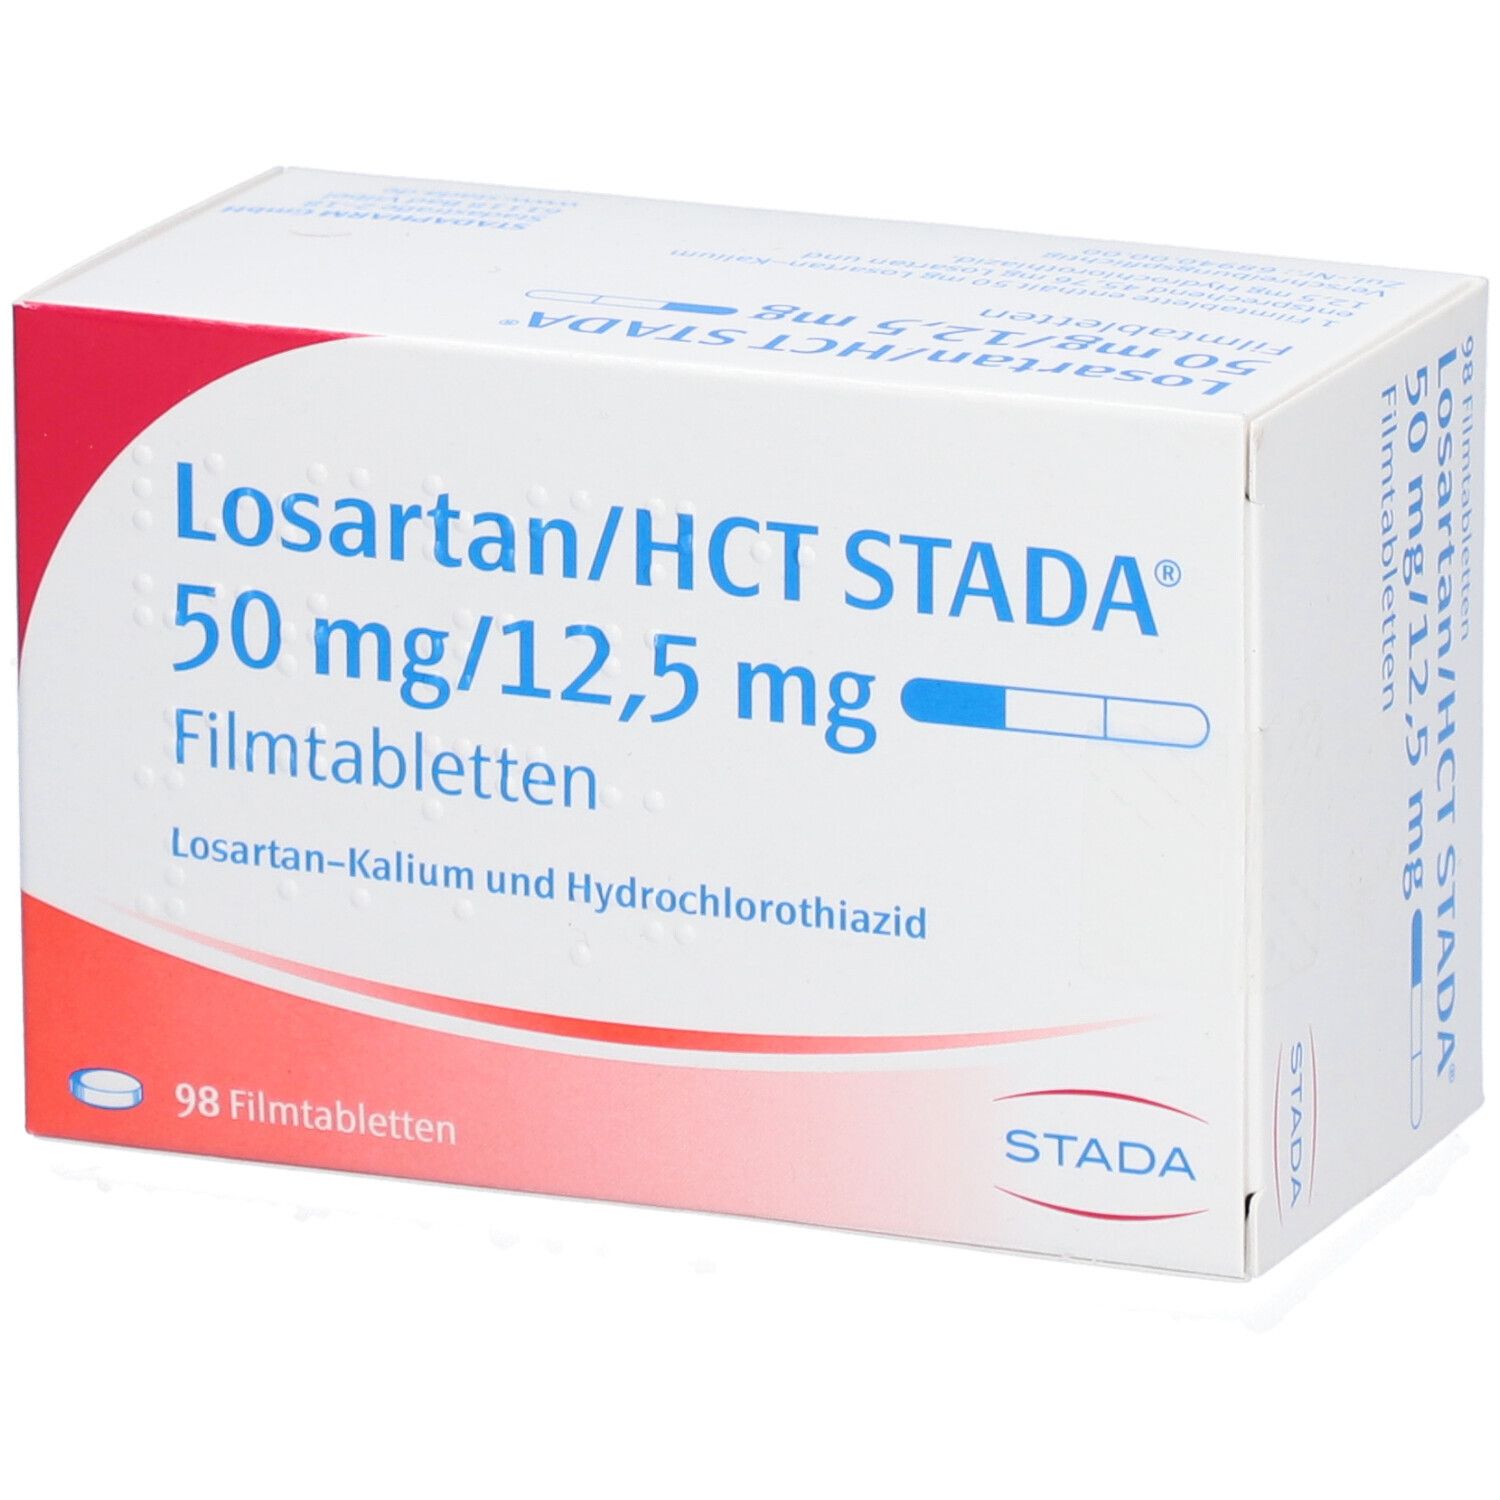 Losartan/HCT Stada® 50 mg/12,5 mg